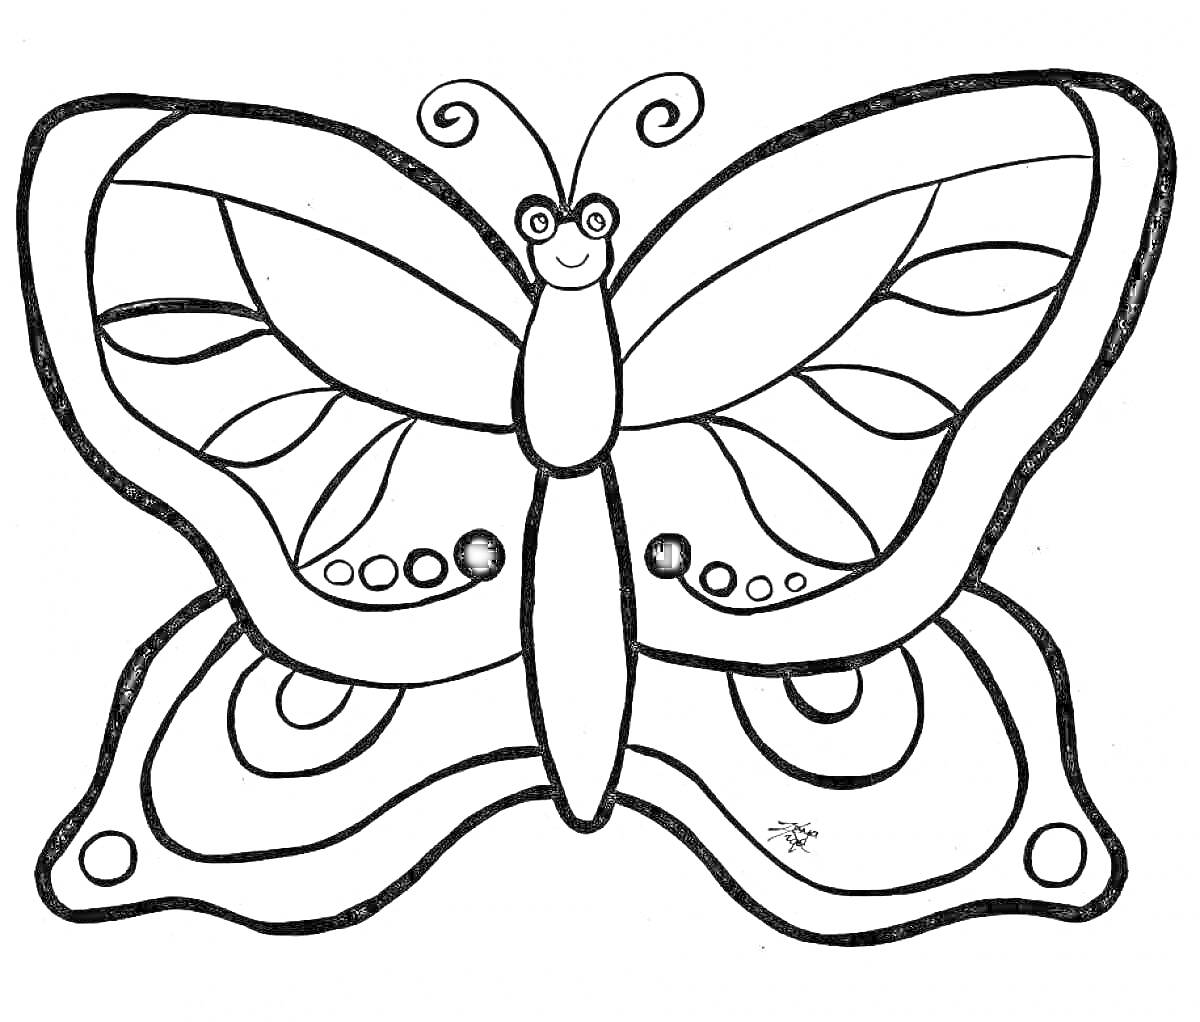 Раскраска Бабочка с узорчатыми крыльями и улыбкой